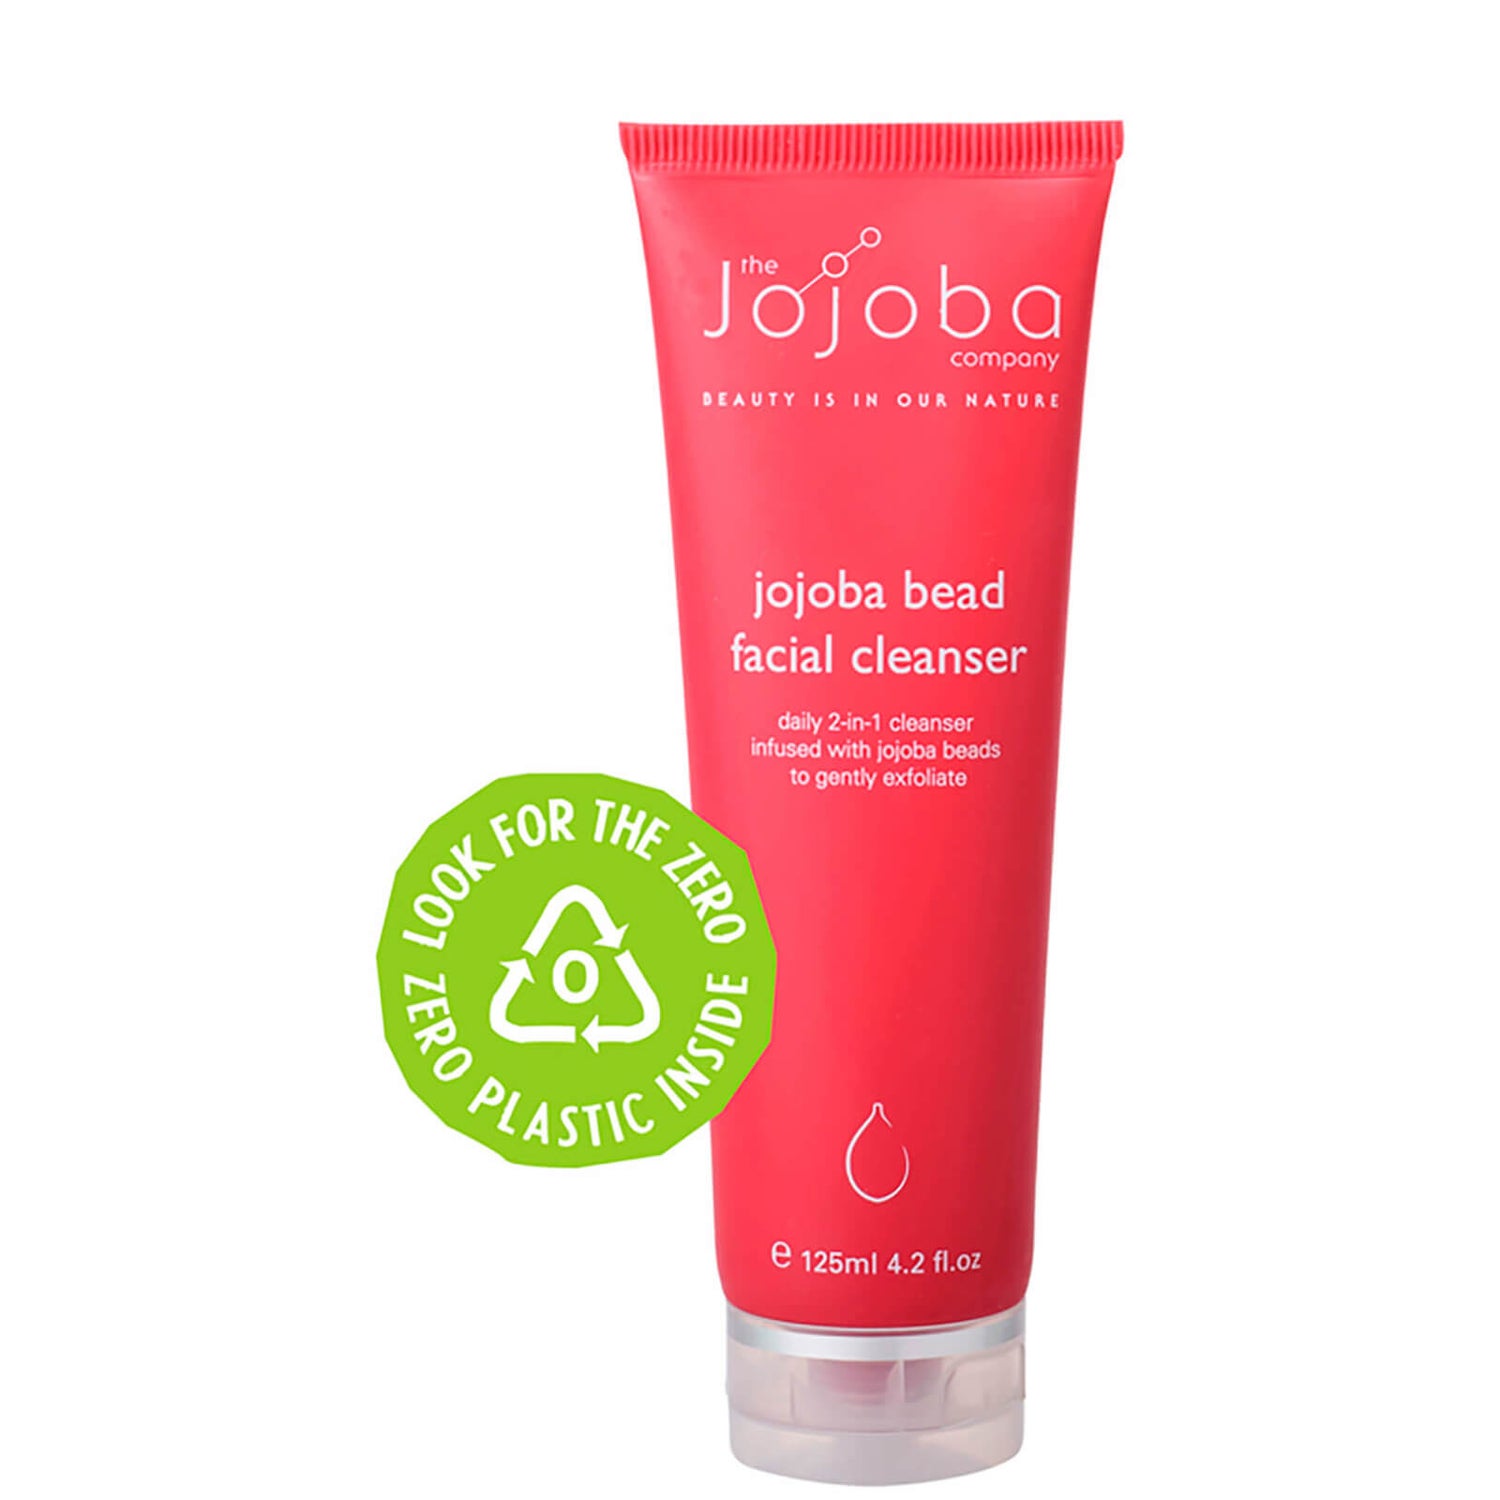 The Jojoba Company Jojoba Bead Facial Cleanser 4.2 fl oz